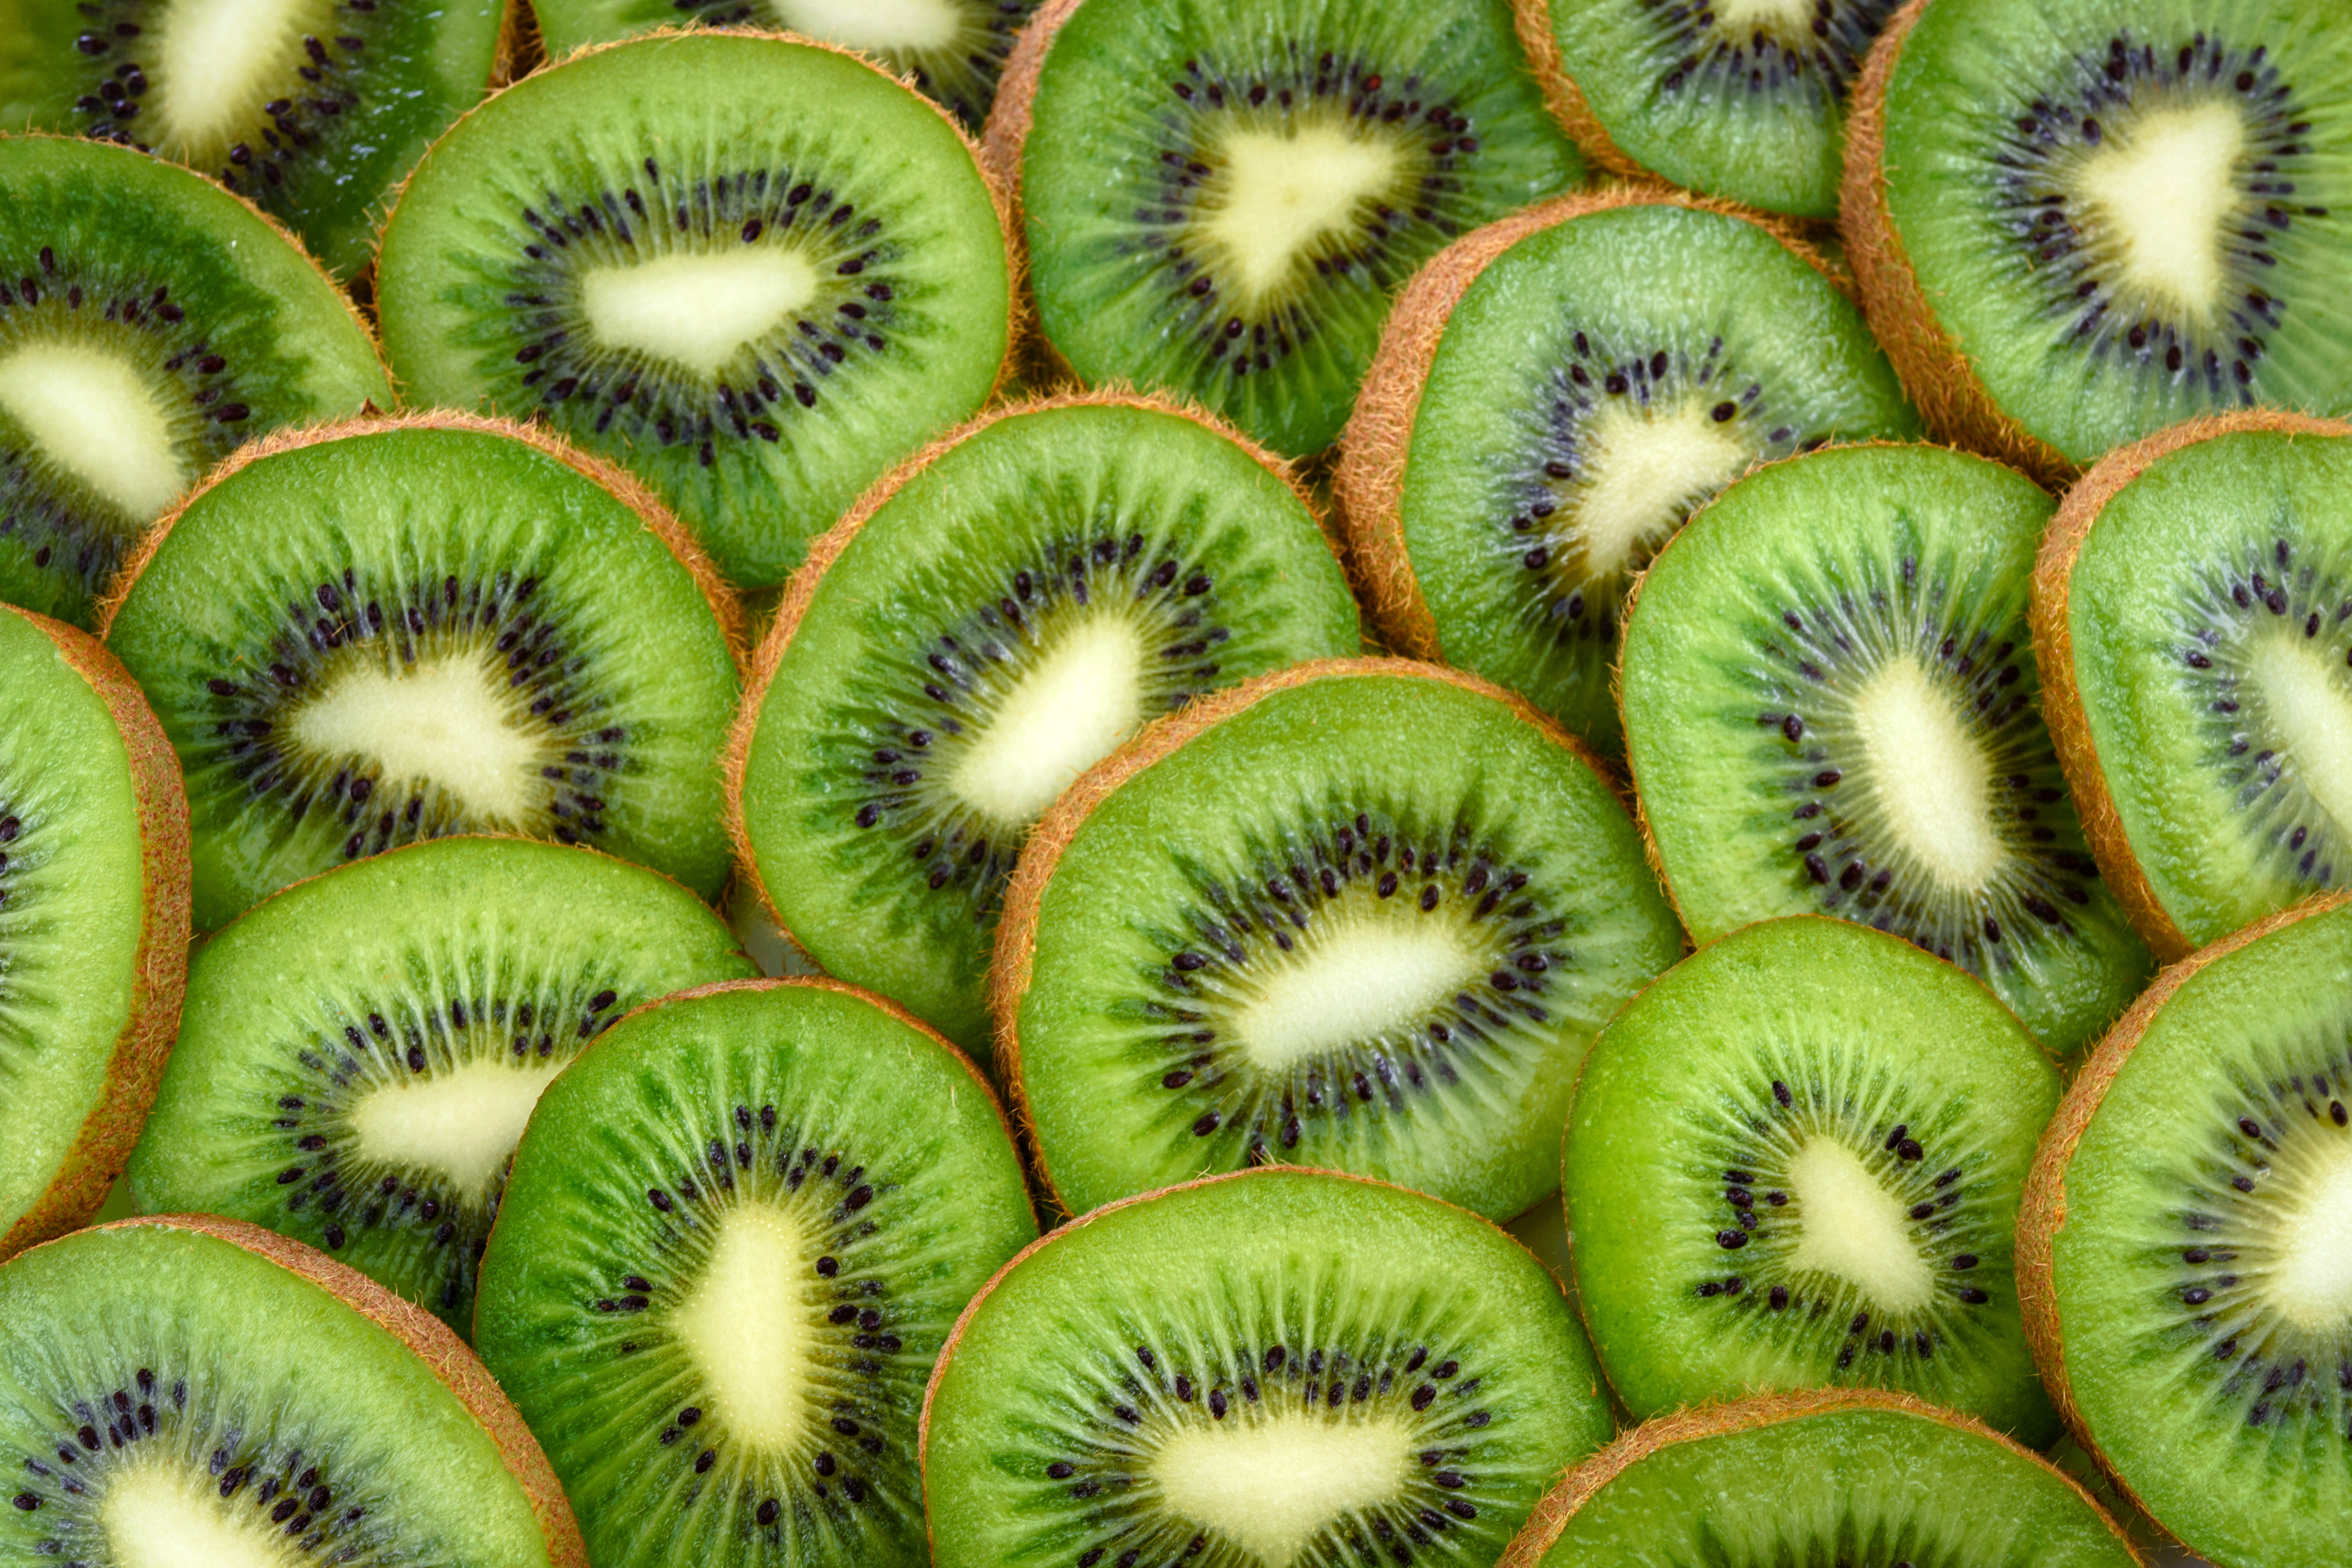 Sliced and open Kiwi fruit image - Free stock photo - Public Domain ...